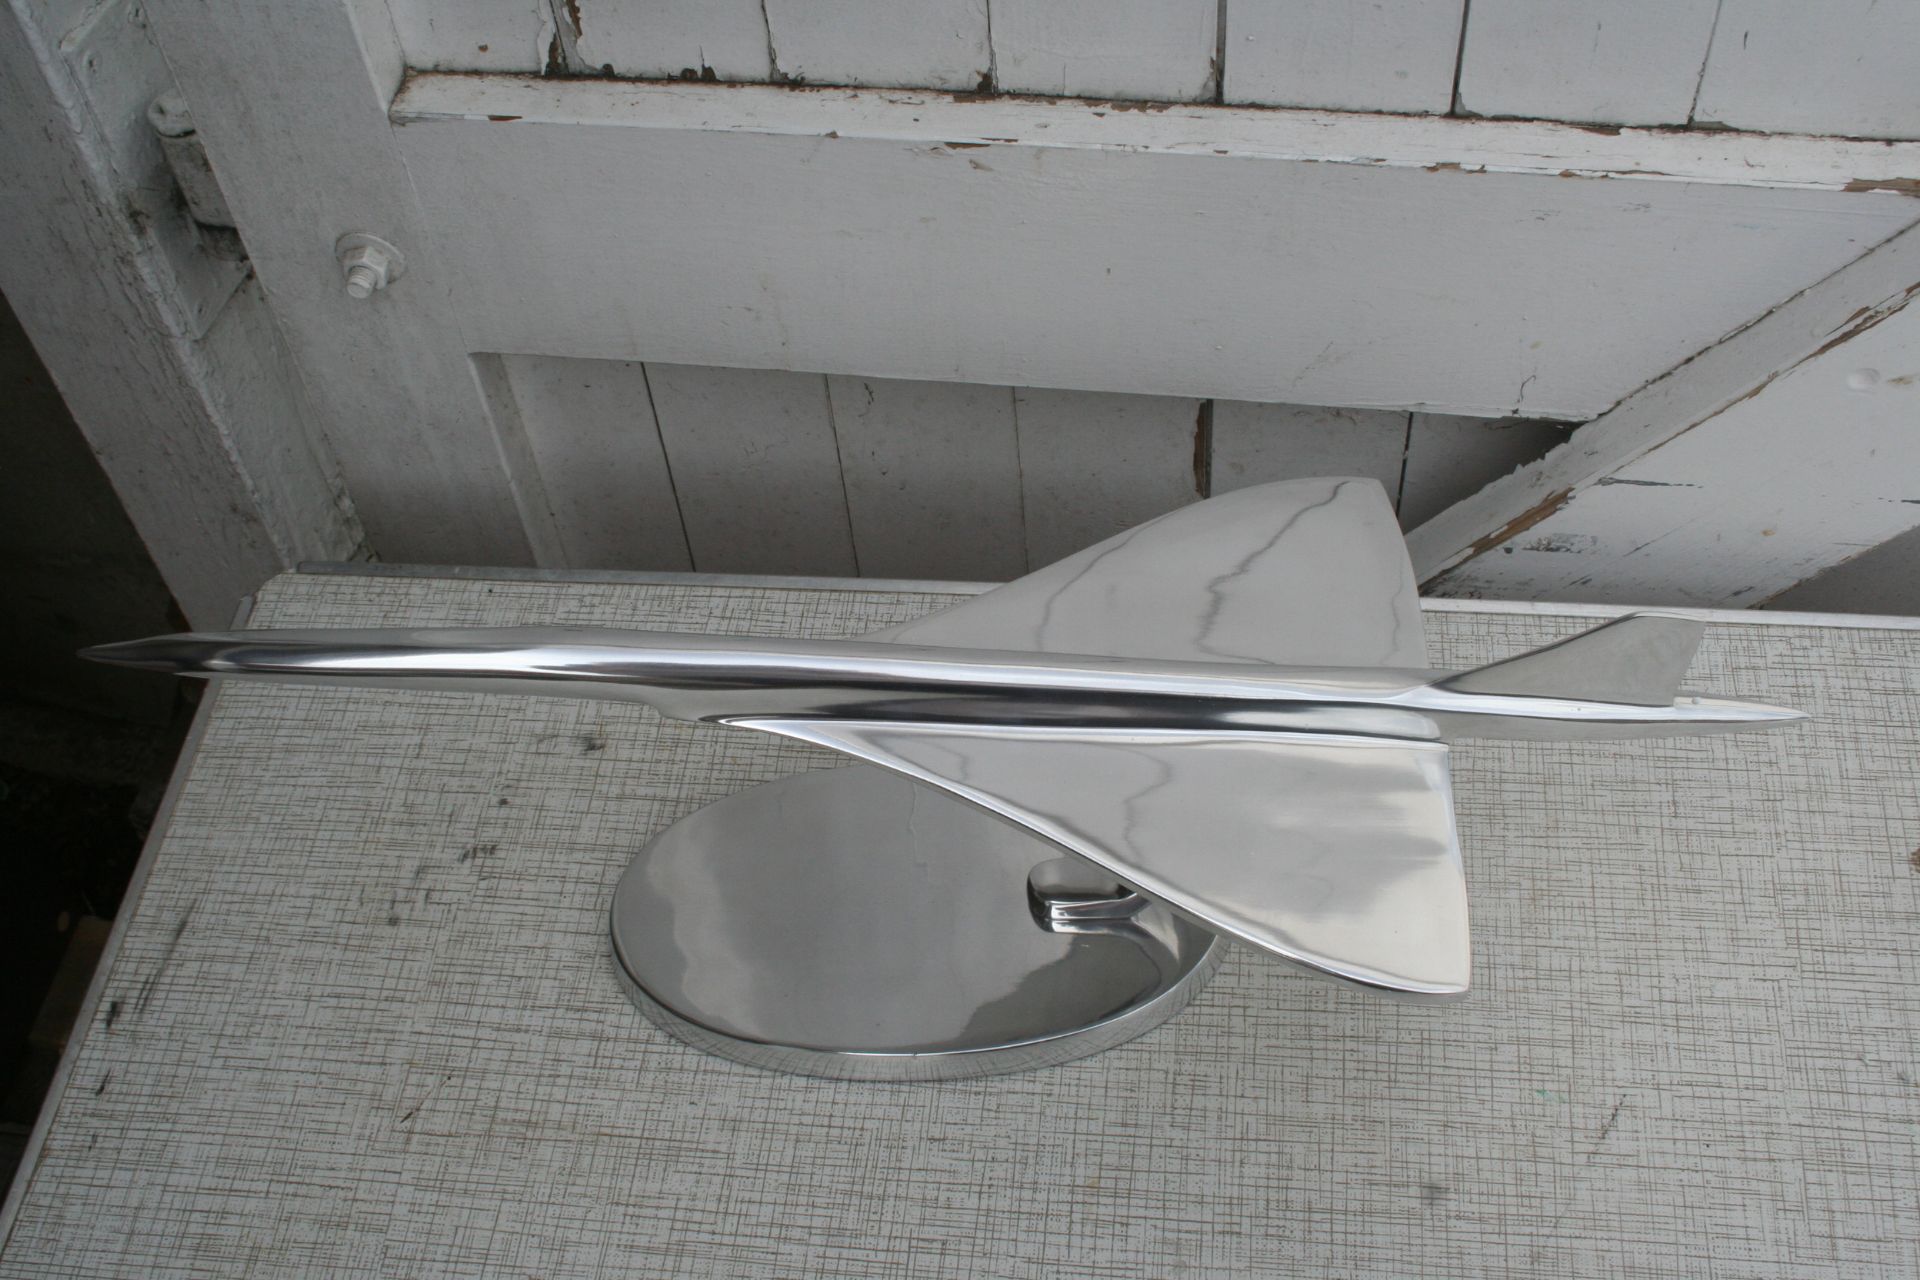 24" aluminium concord model - Image 2 of 2